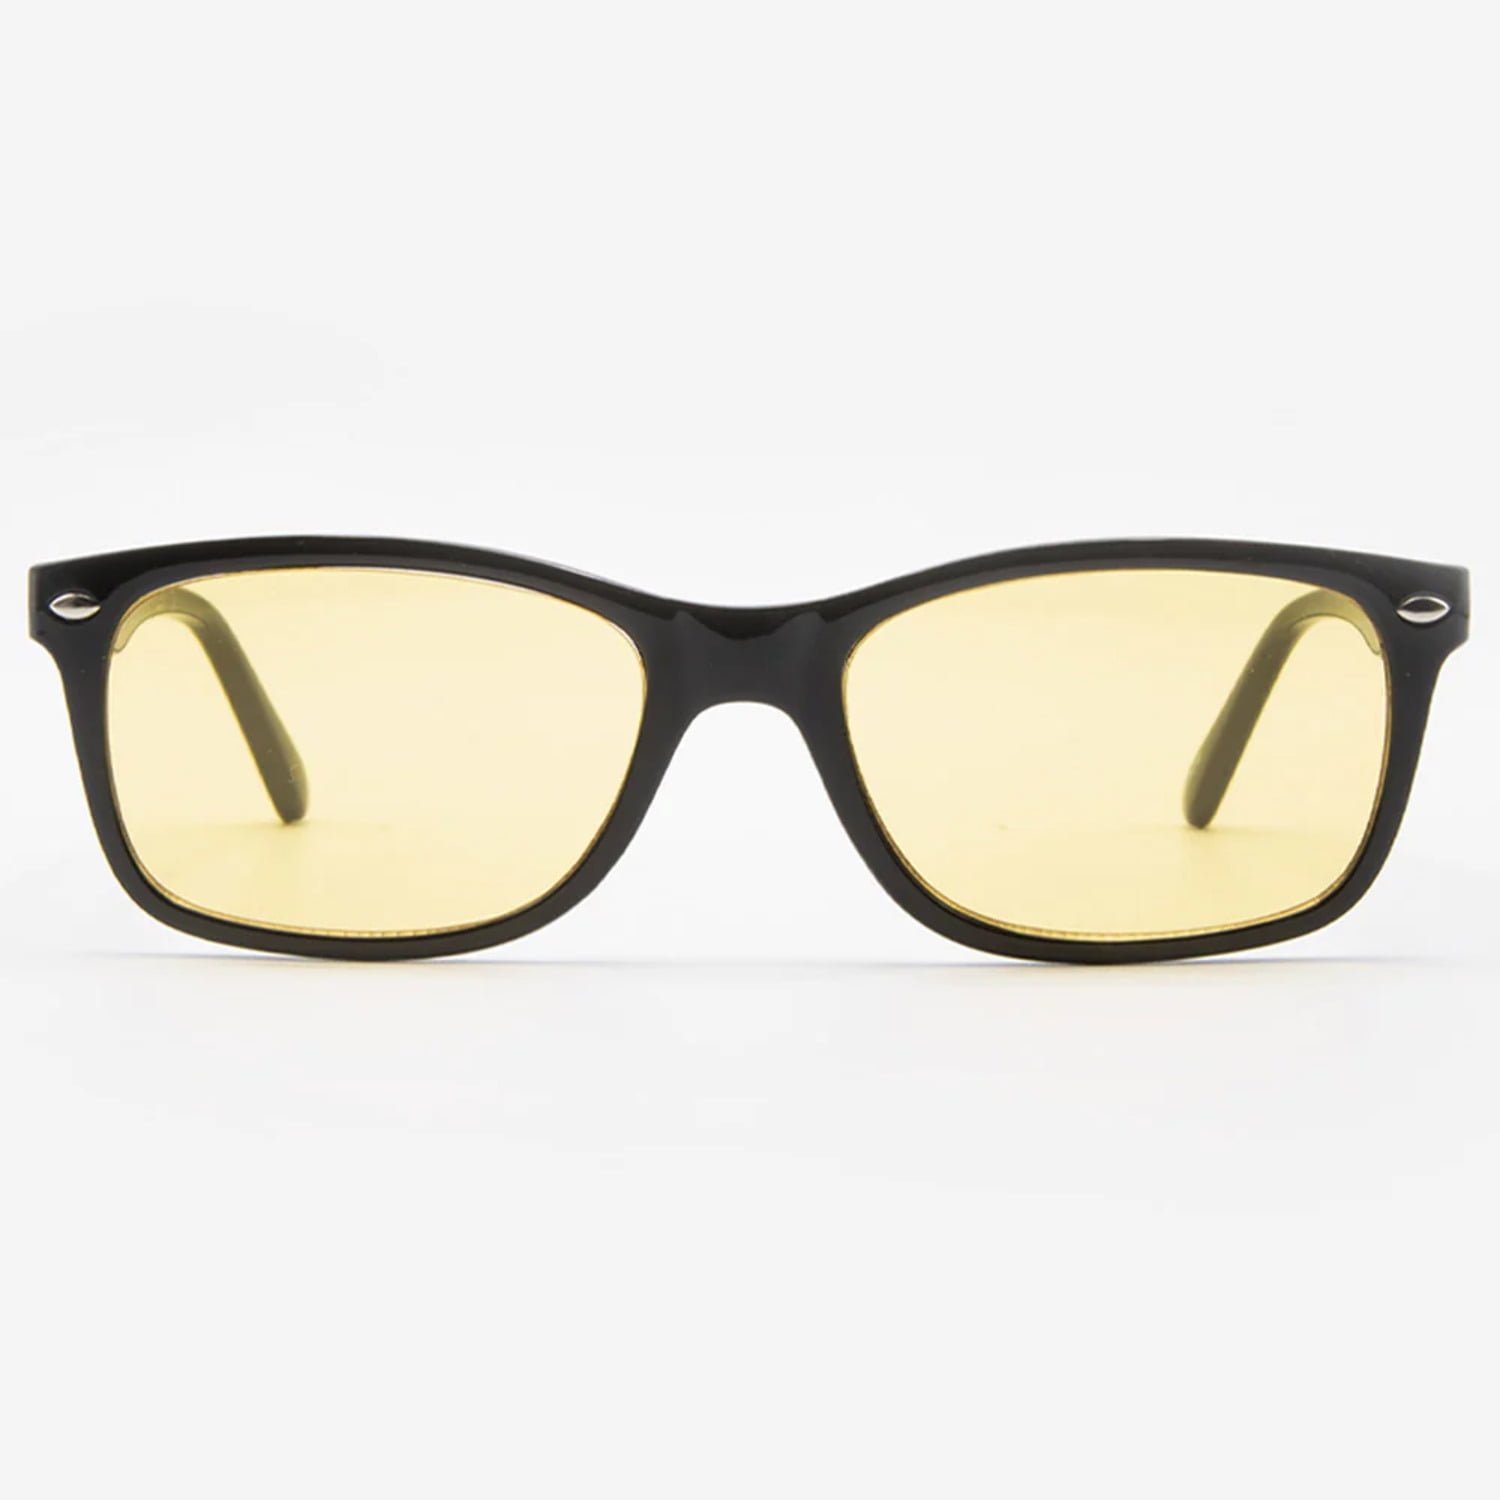 Black Night Vision Driving Sunglasses For Men's & Women's (White